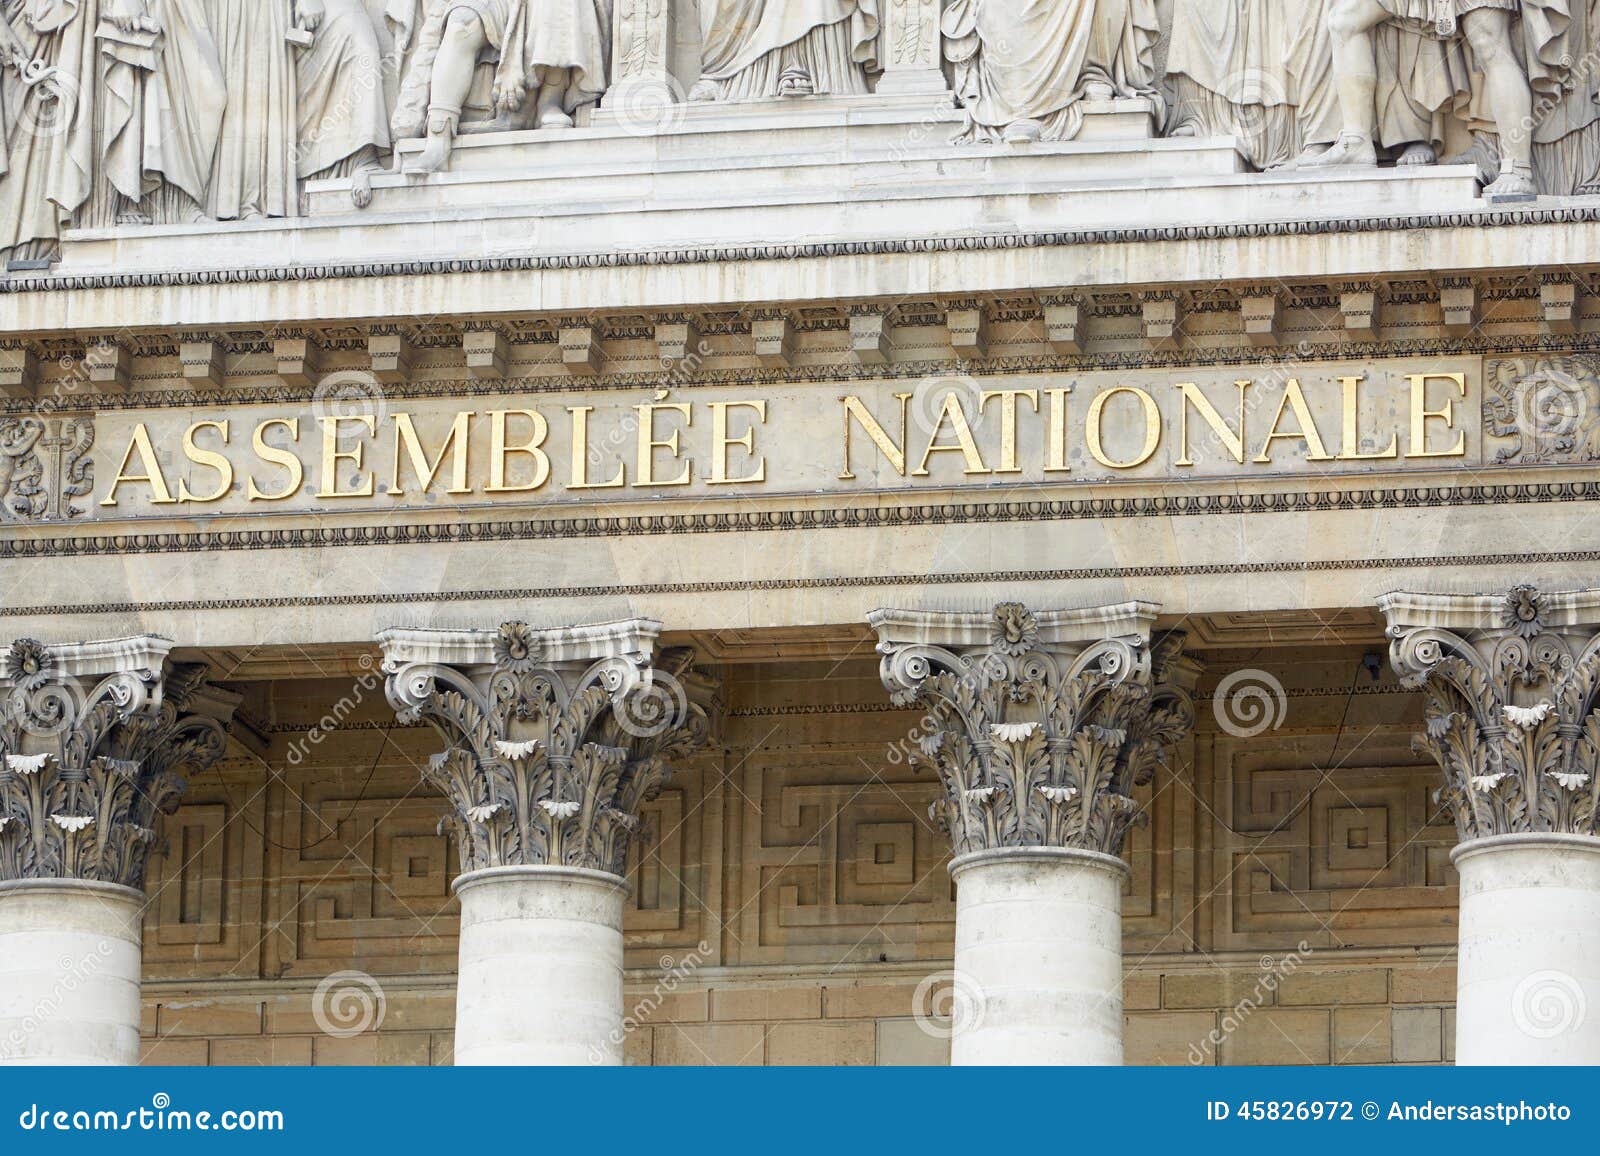 paris, assemblee nationale, french parliament